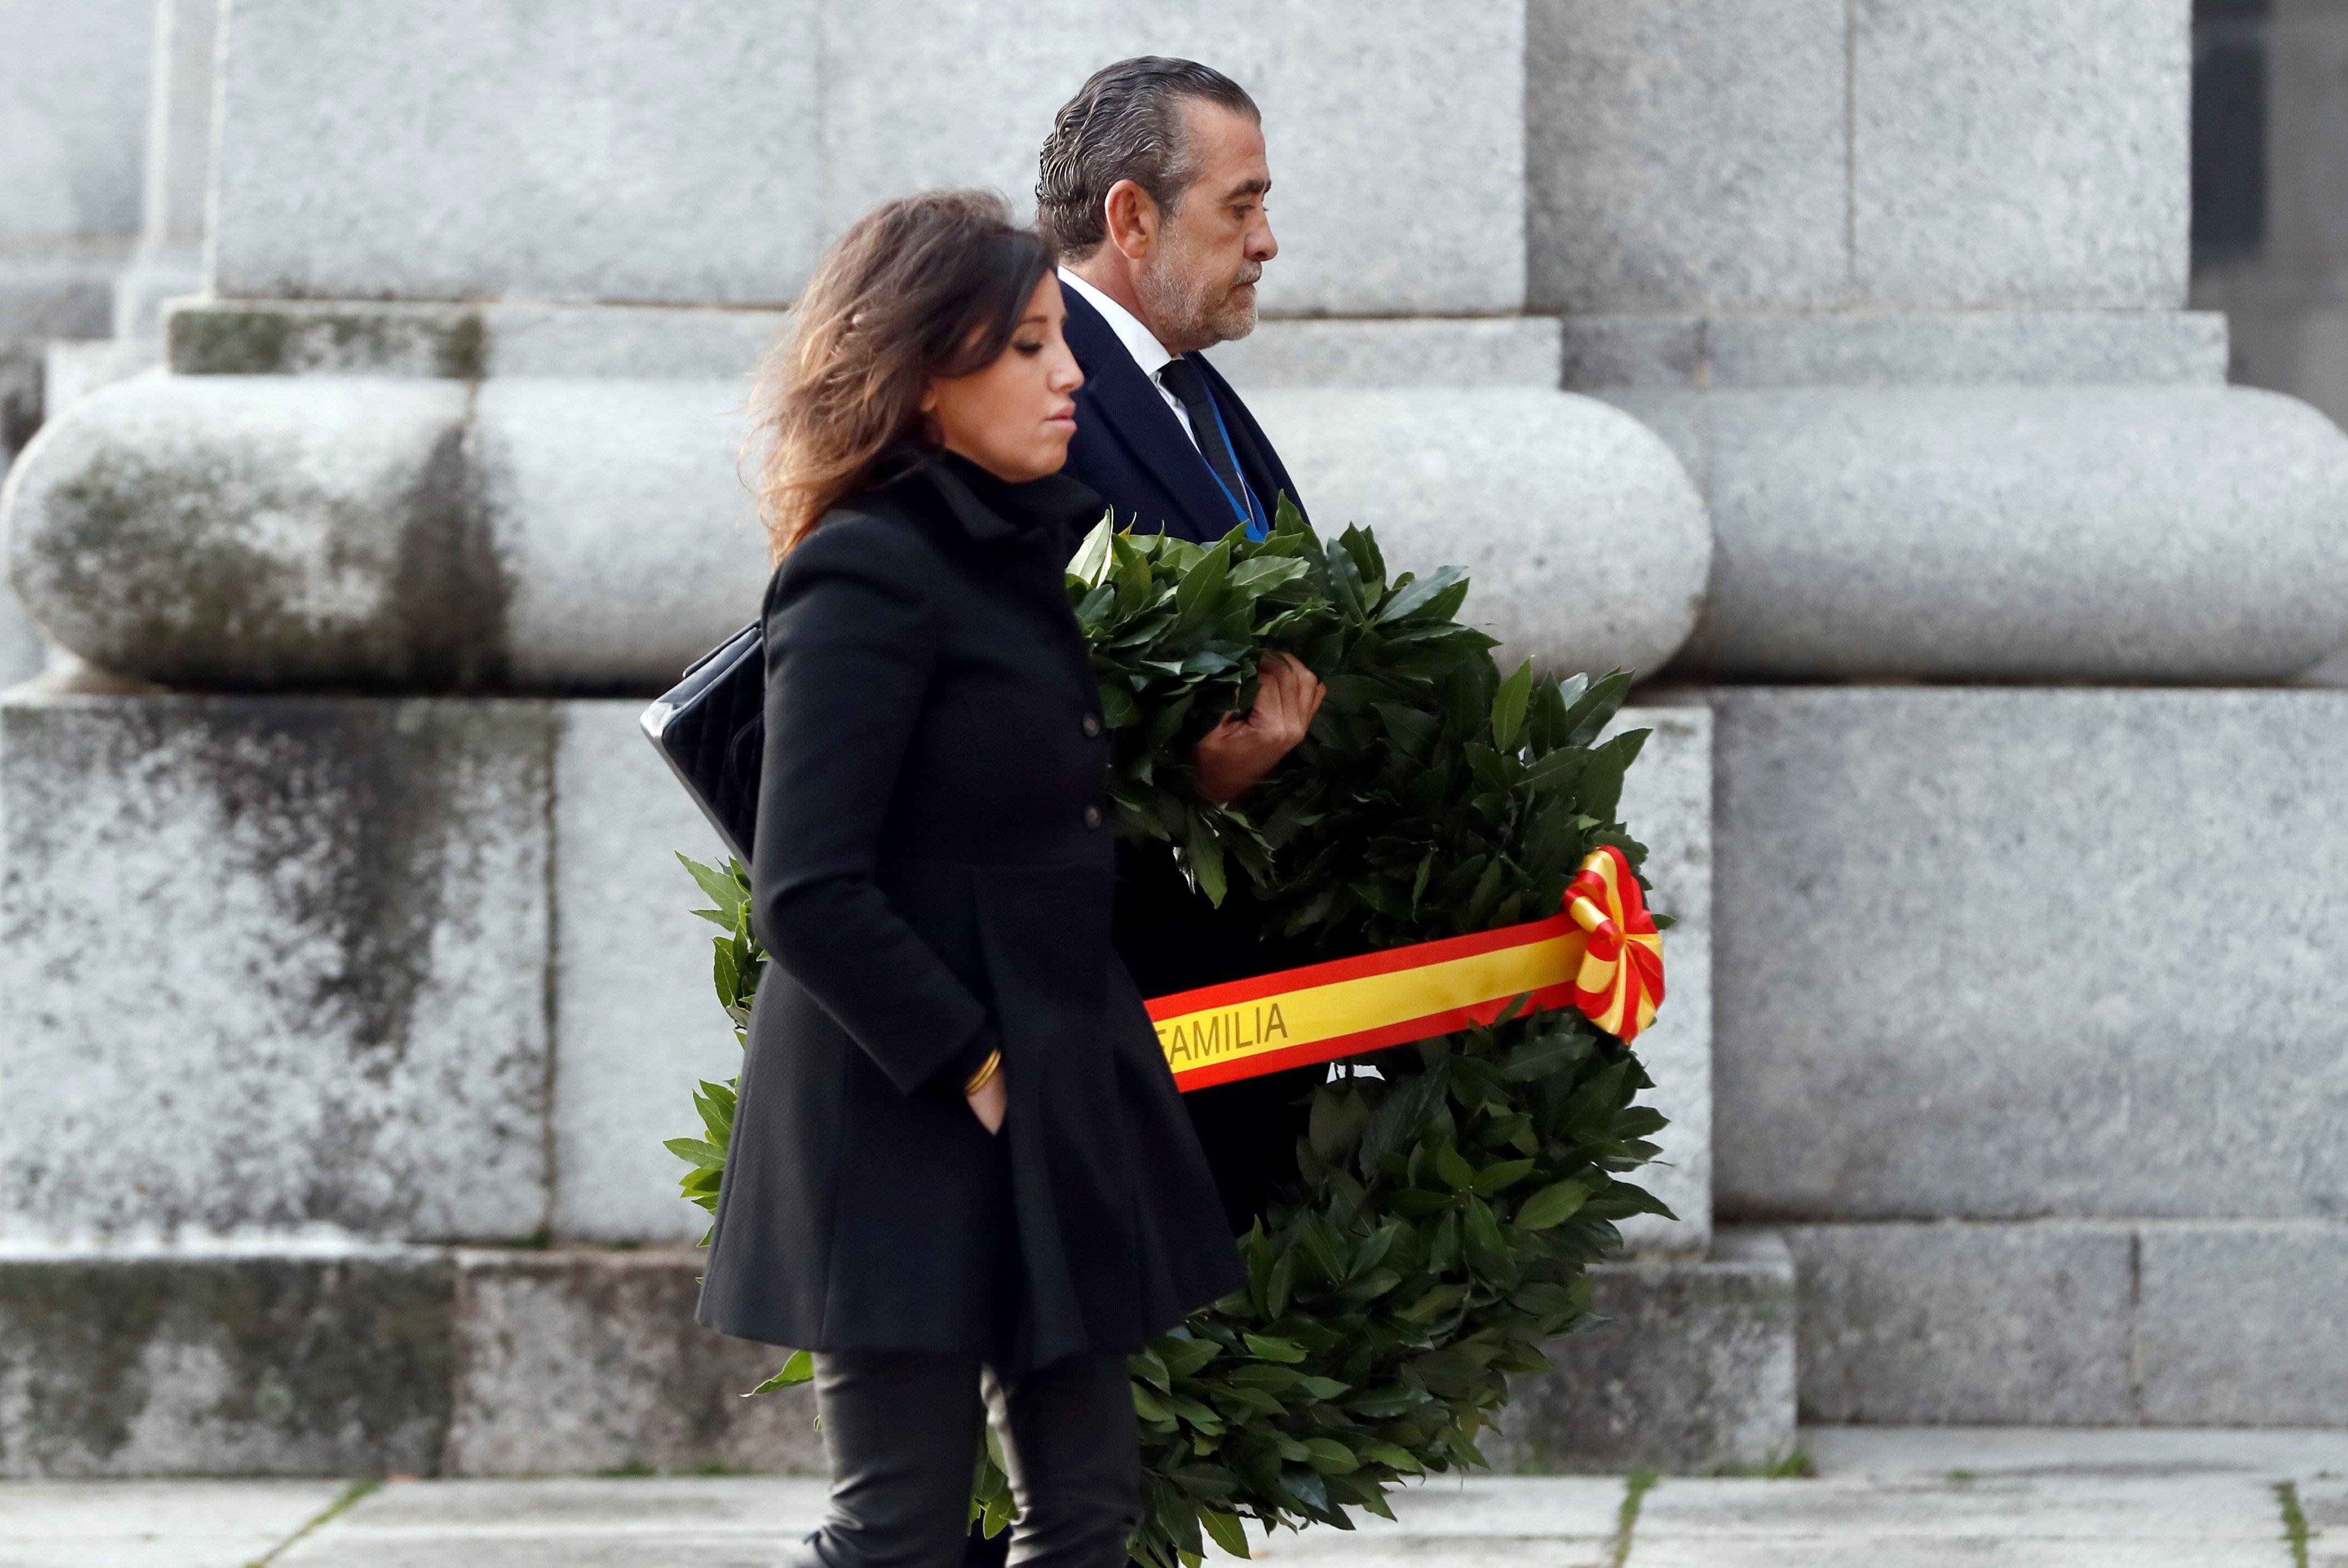 El nieto de Franco Jaime Martínez Bordiú y su pareja Marta Fernández a su llegada al Valle de los Caídos para la exhumación de Franco. Europa Press